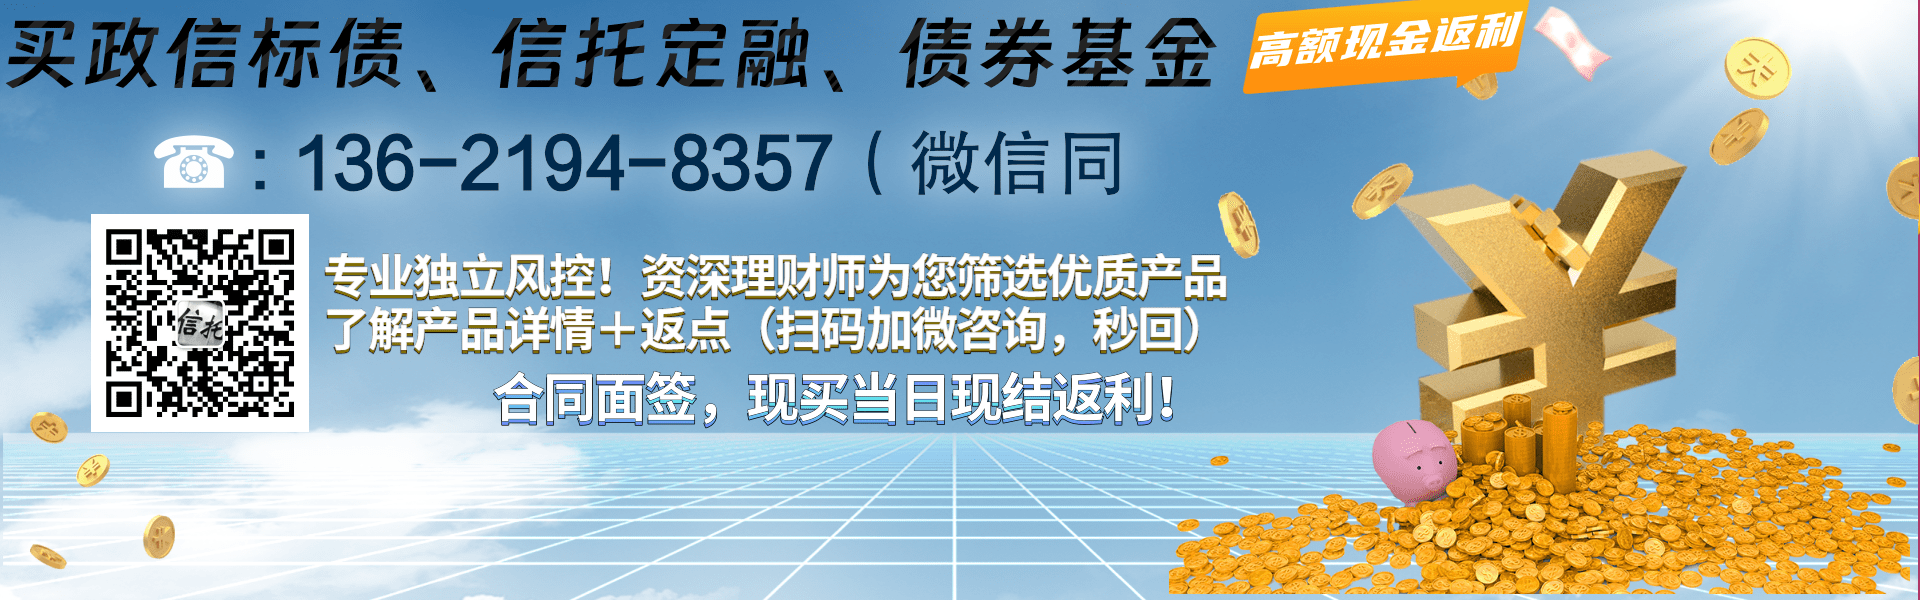 国企信托-XH12号·重庆大足标债